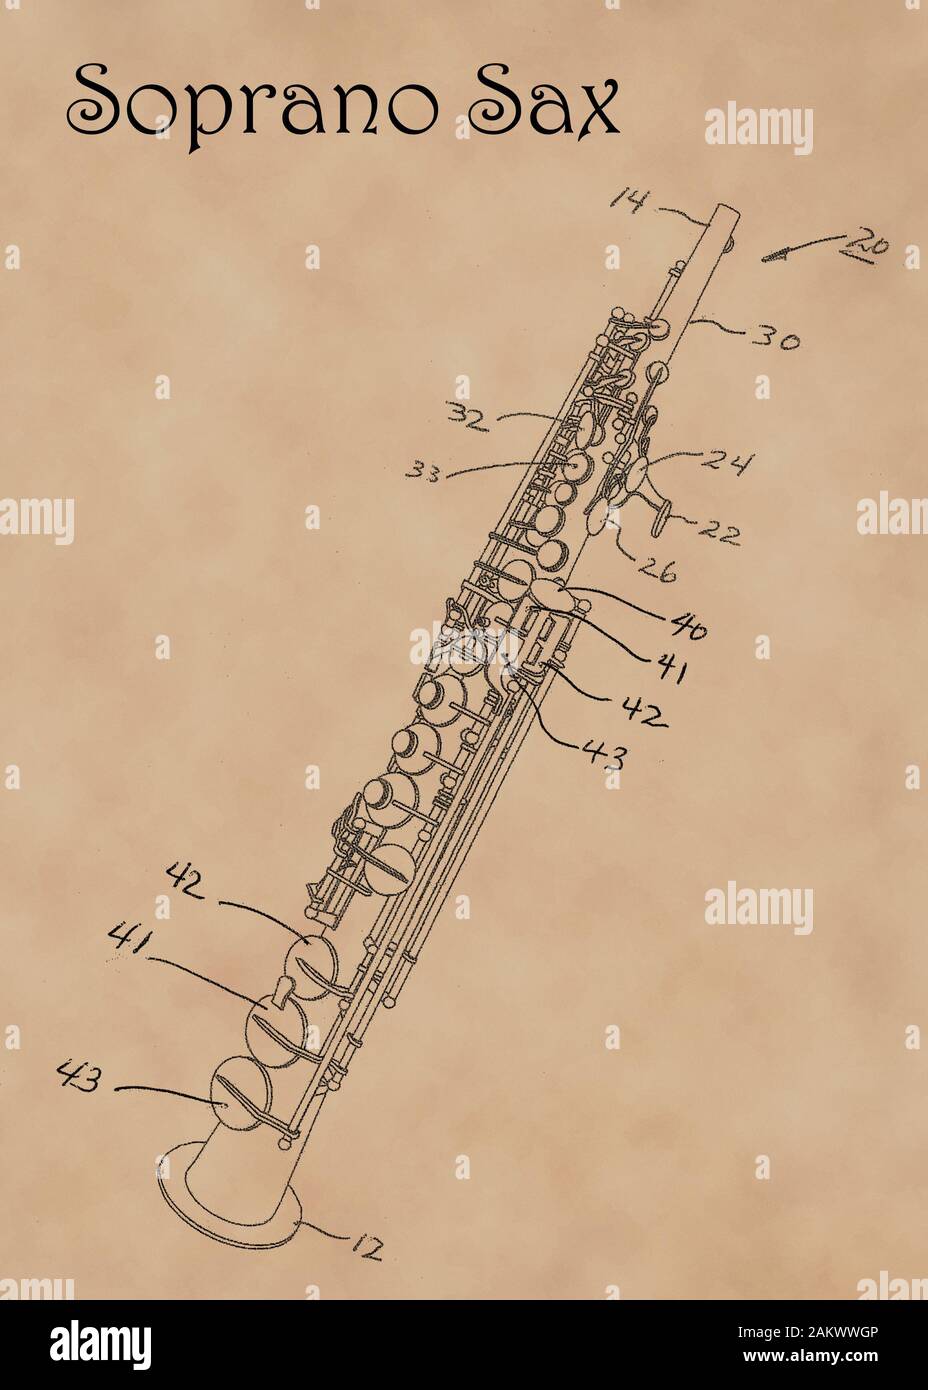 Schéma de brevets aux États-Unis pour saxophone soprano sur instrument de musique s'est évanoui de papier sulfurisé. Banque D'Images